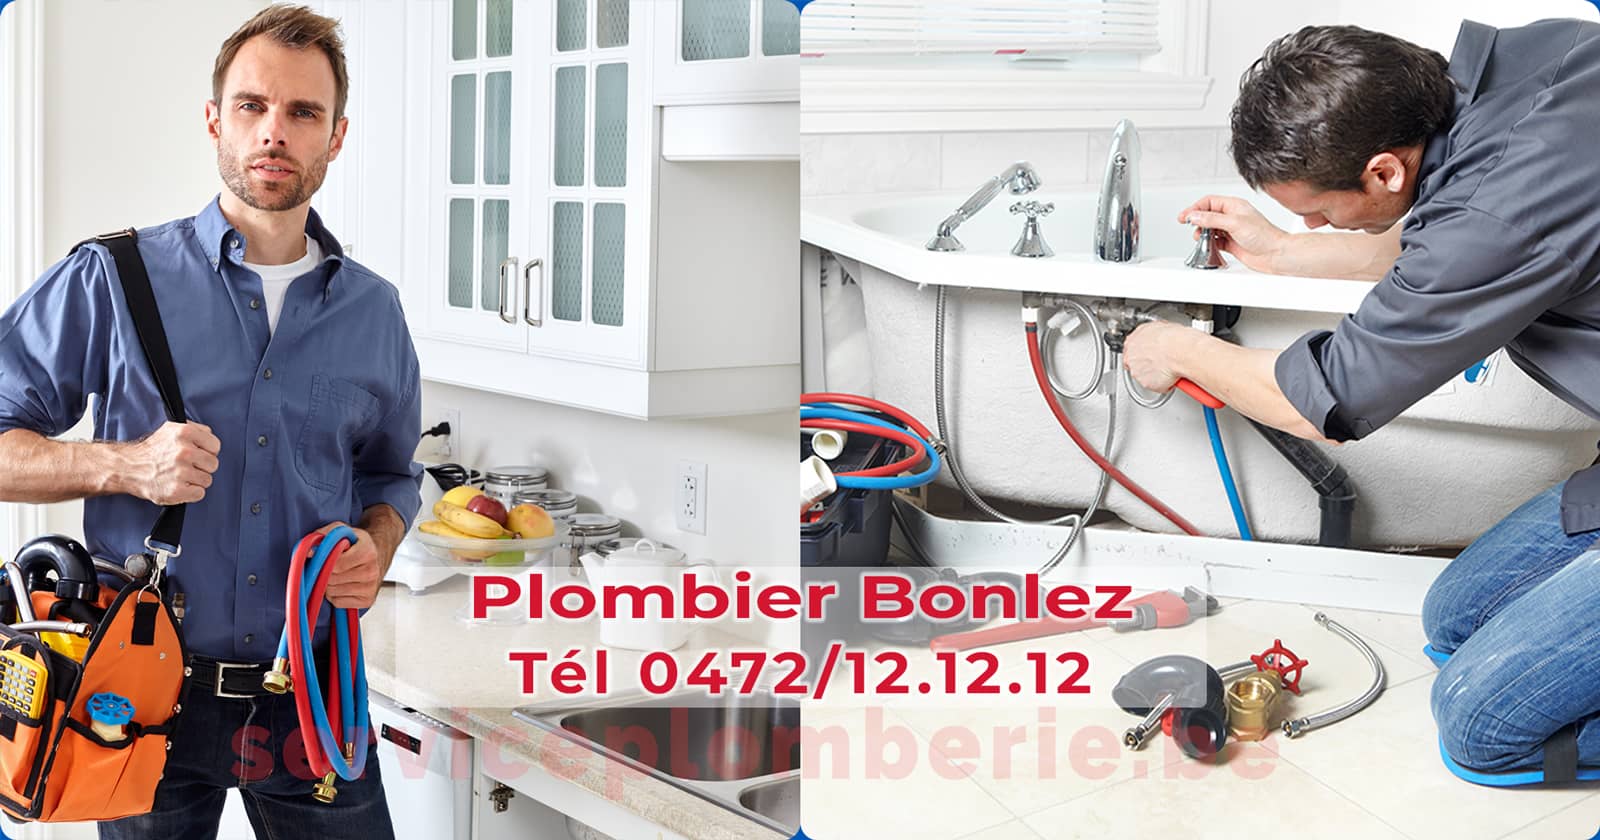 Plombier Bonlez Agréé Professionnel Service Plomberie Tél 0472/12.12.12